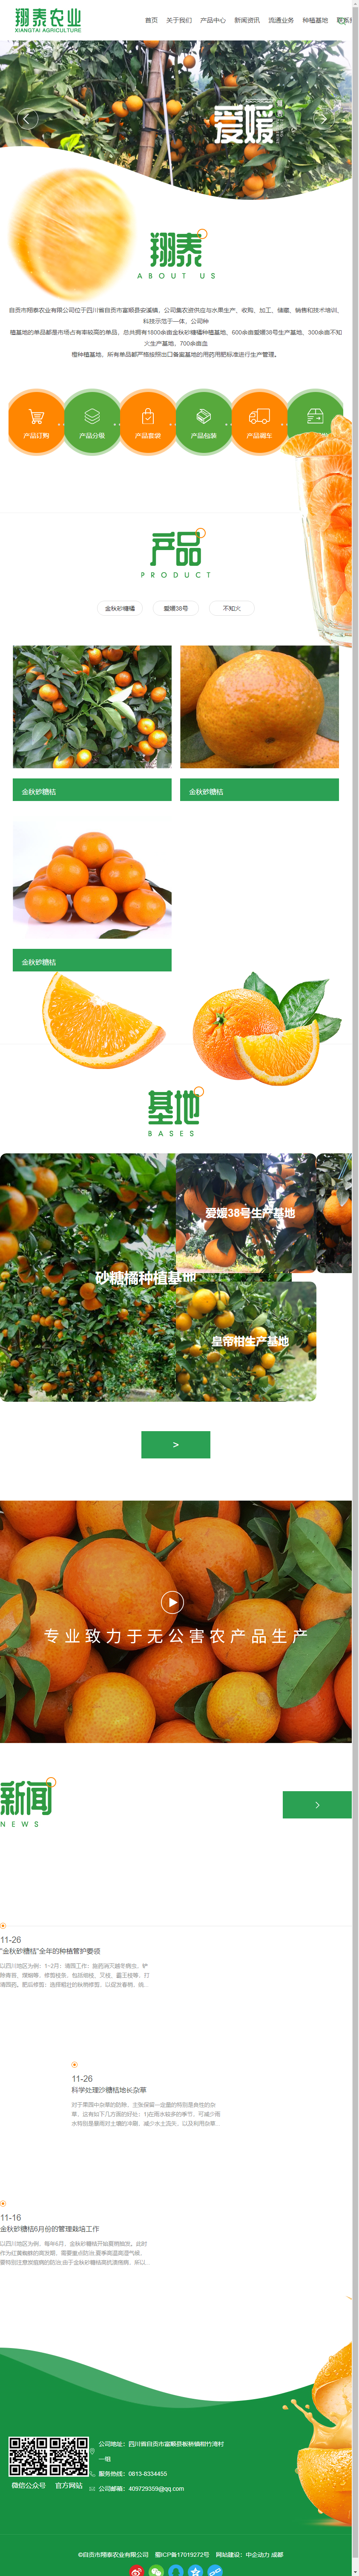 自贡市翔泰农业有限公司网站案例